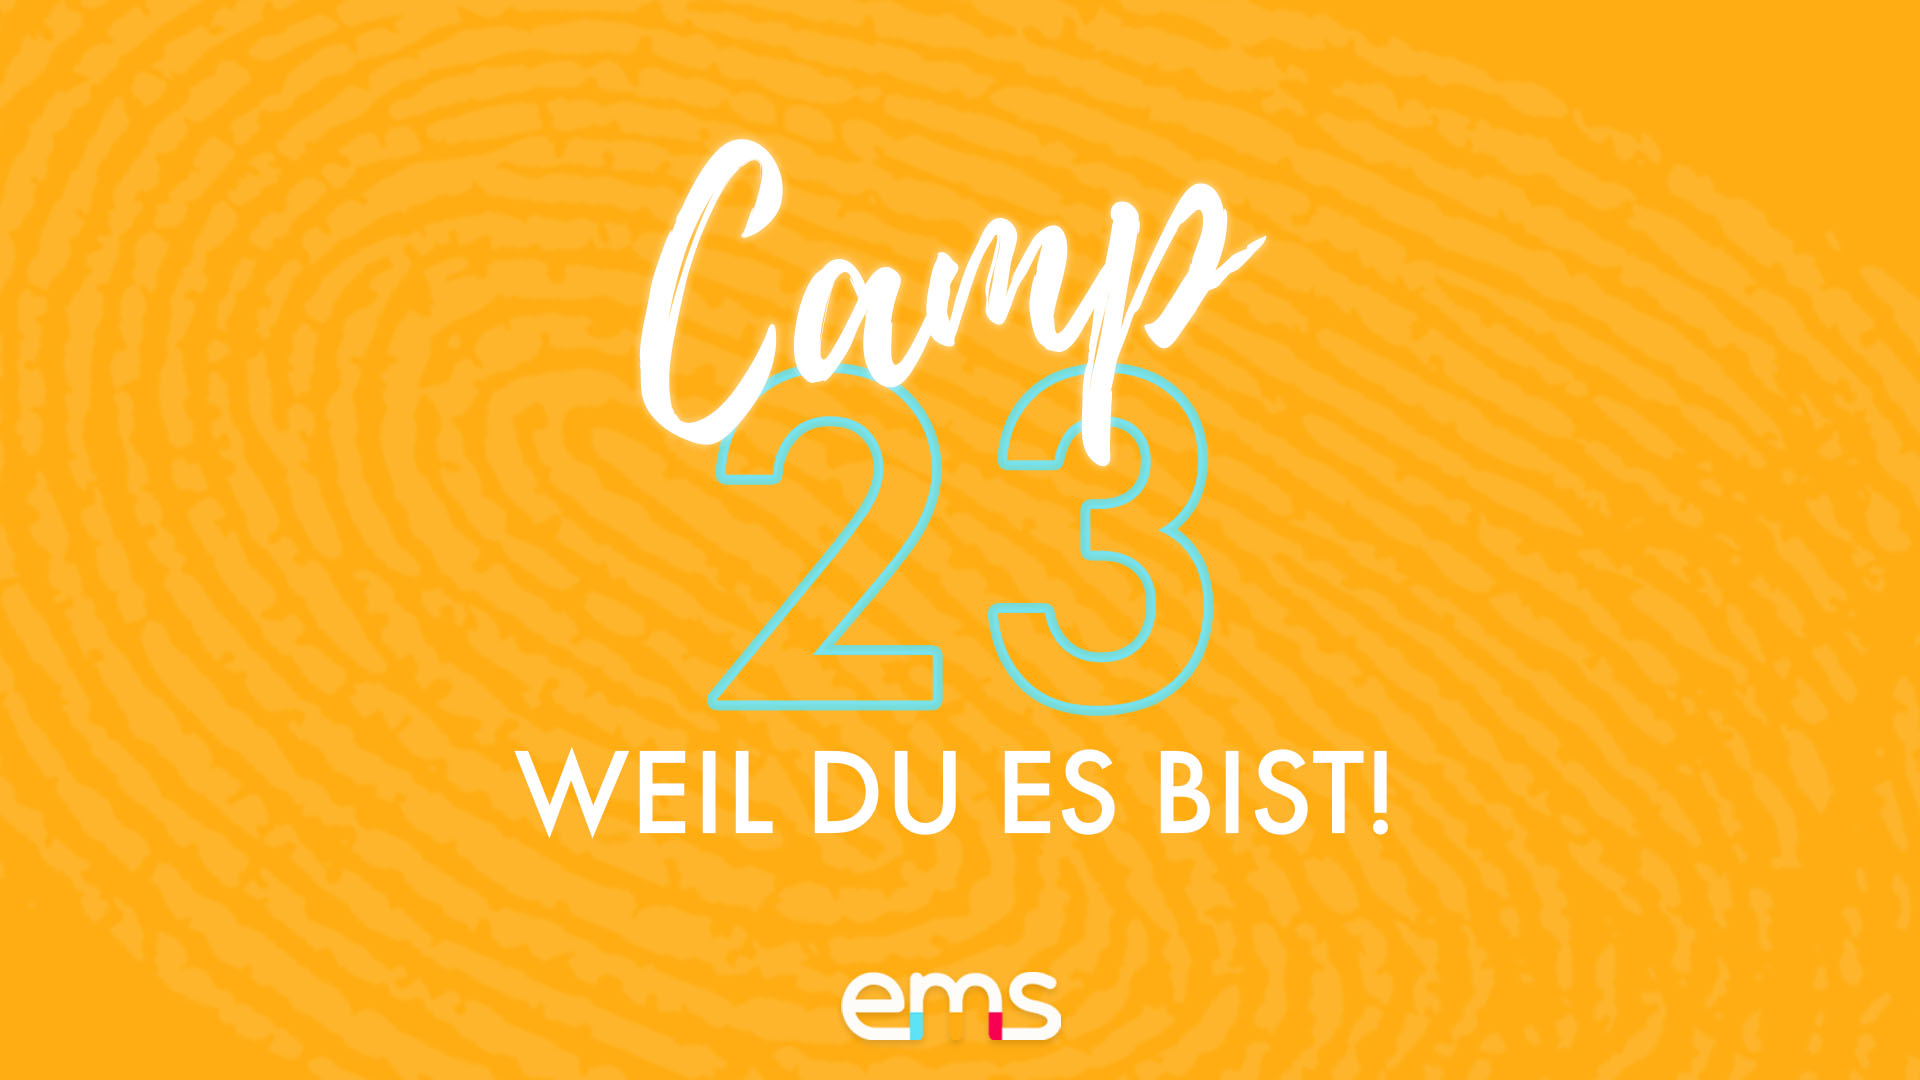 Featured image for “Camp 23 – ein Trainingslager für Journalismustalente”